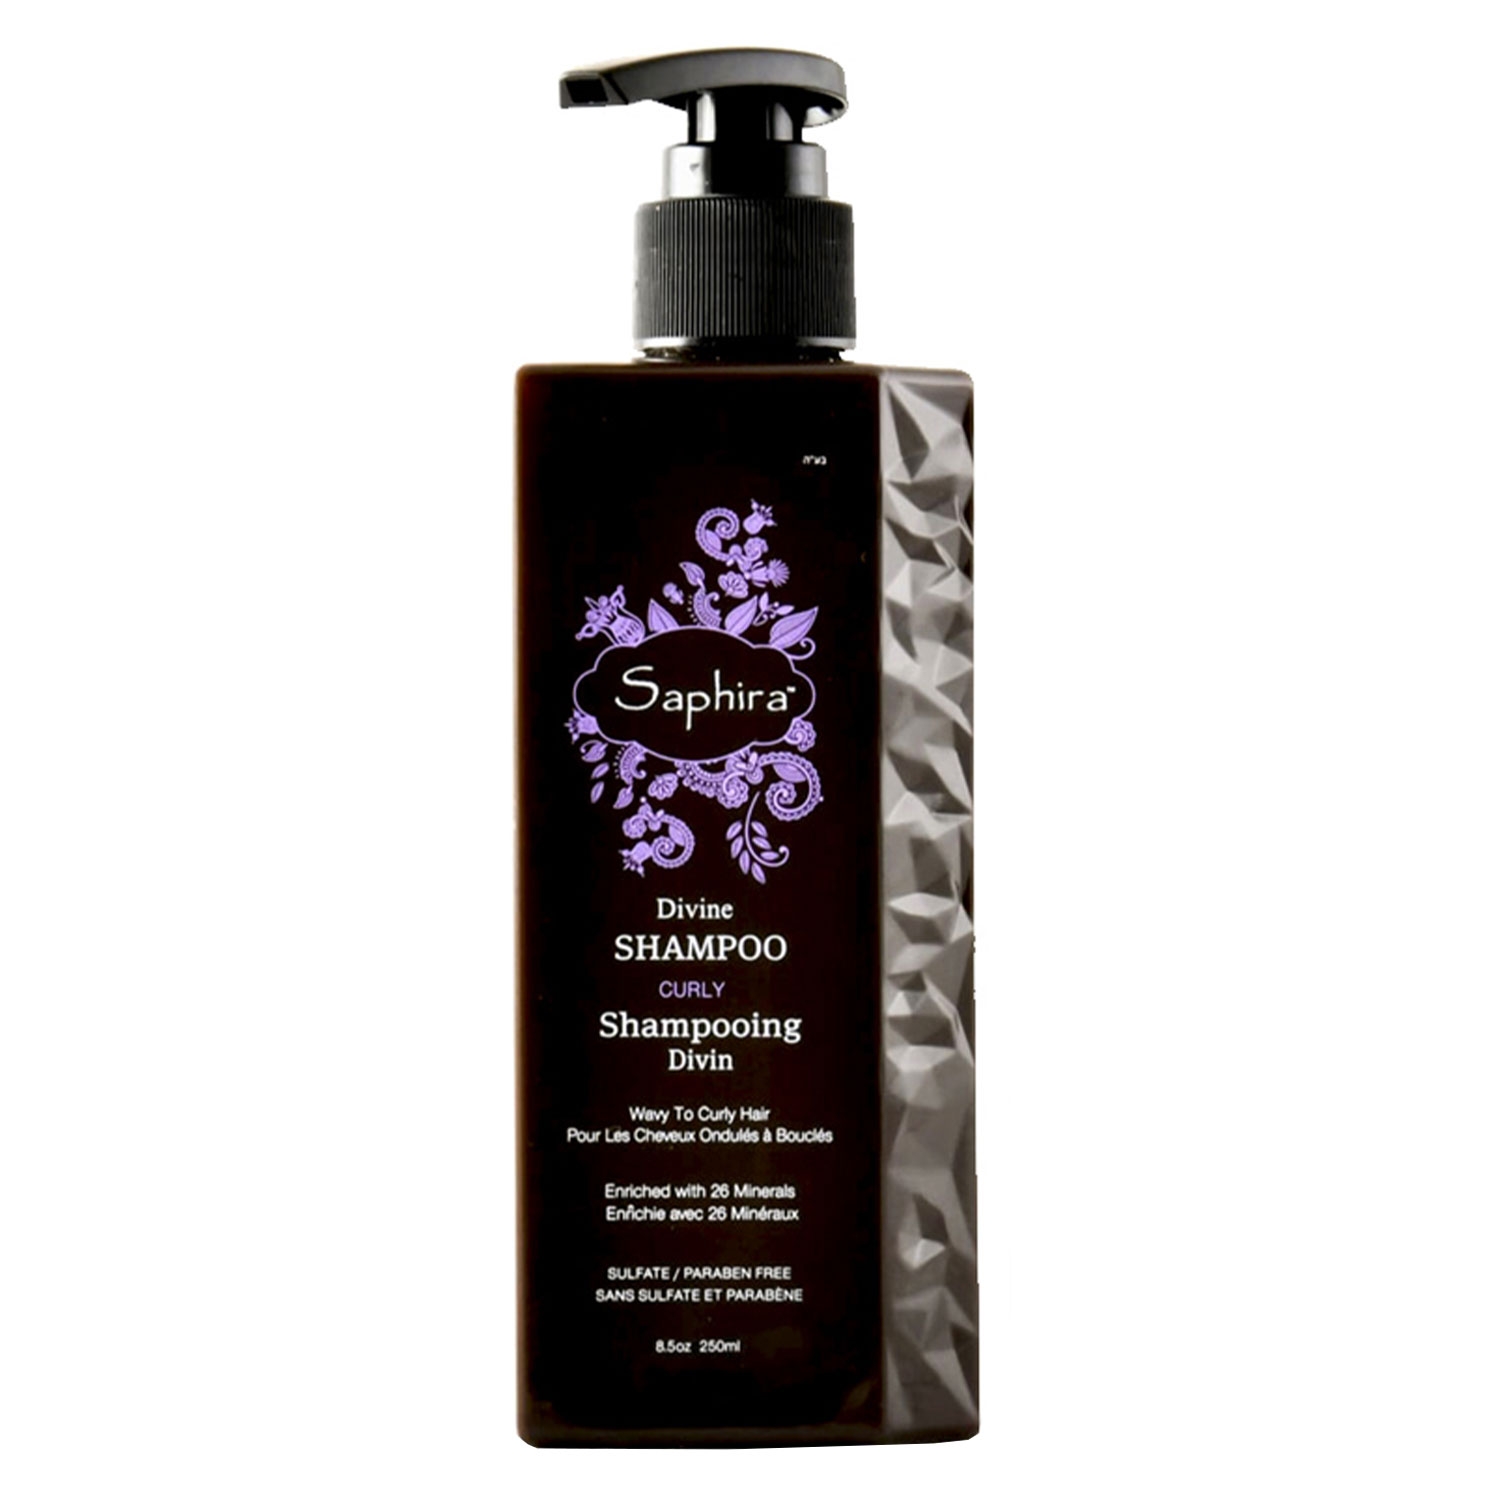 Produktbild von Saphira - Divine Shampoo Curly